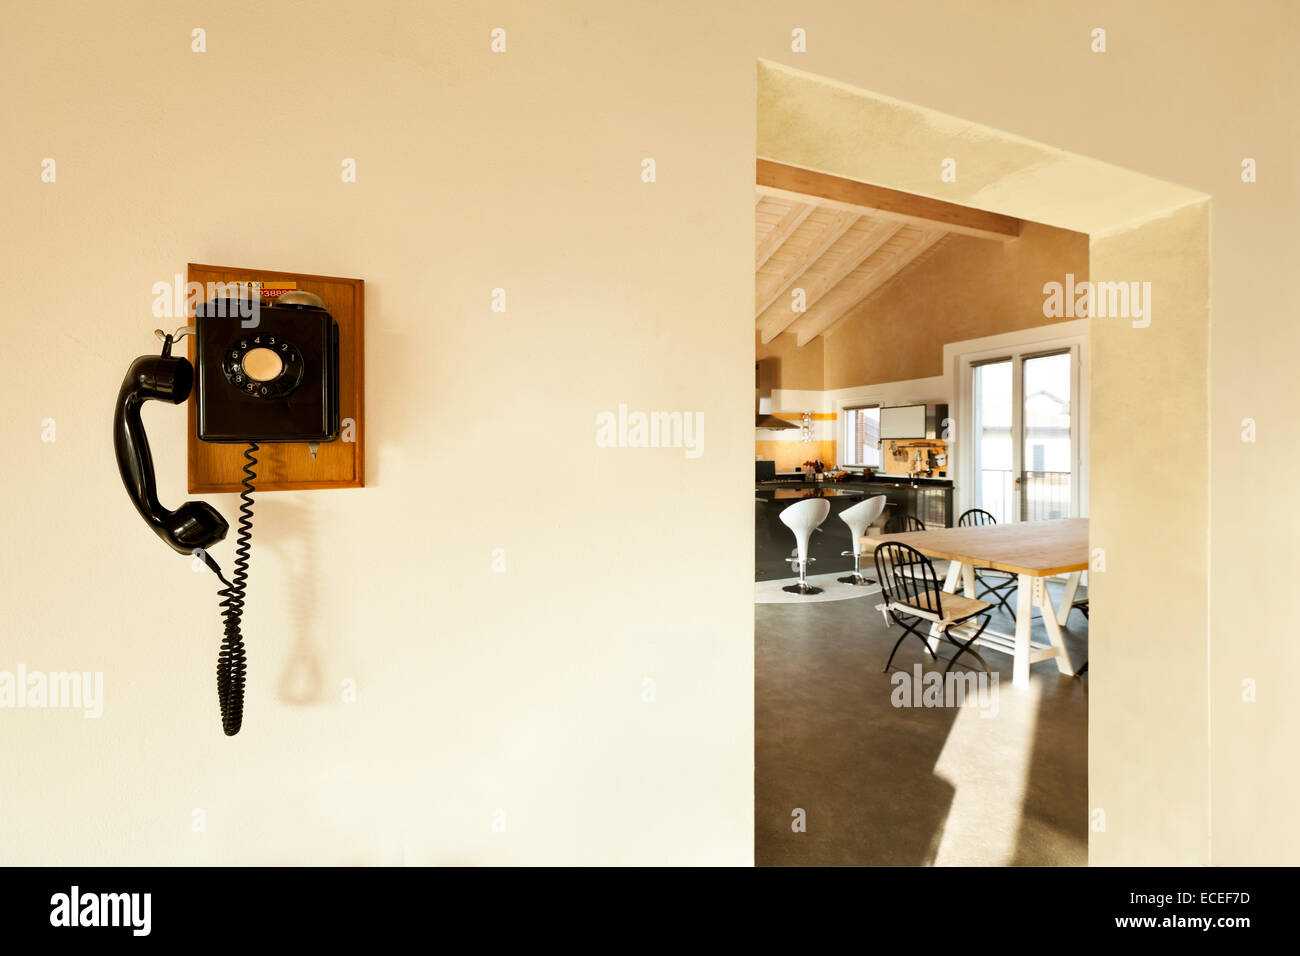 Vista de la cocina y el teléfono, vintage en la pared Foto de stock